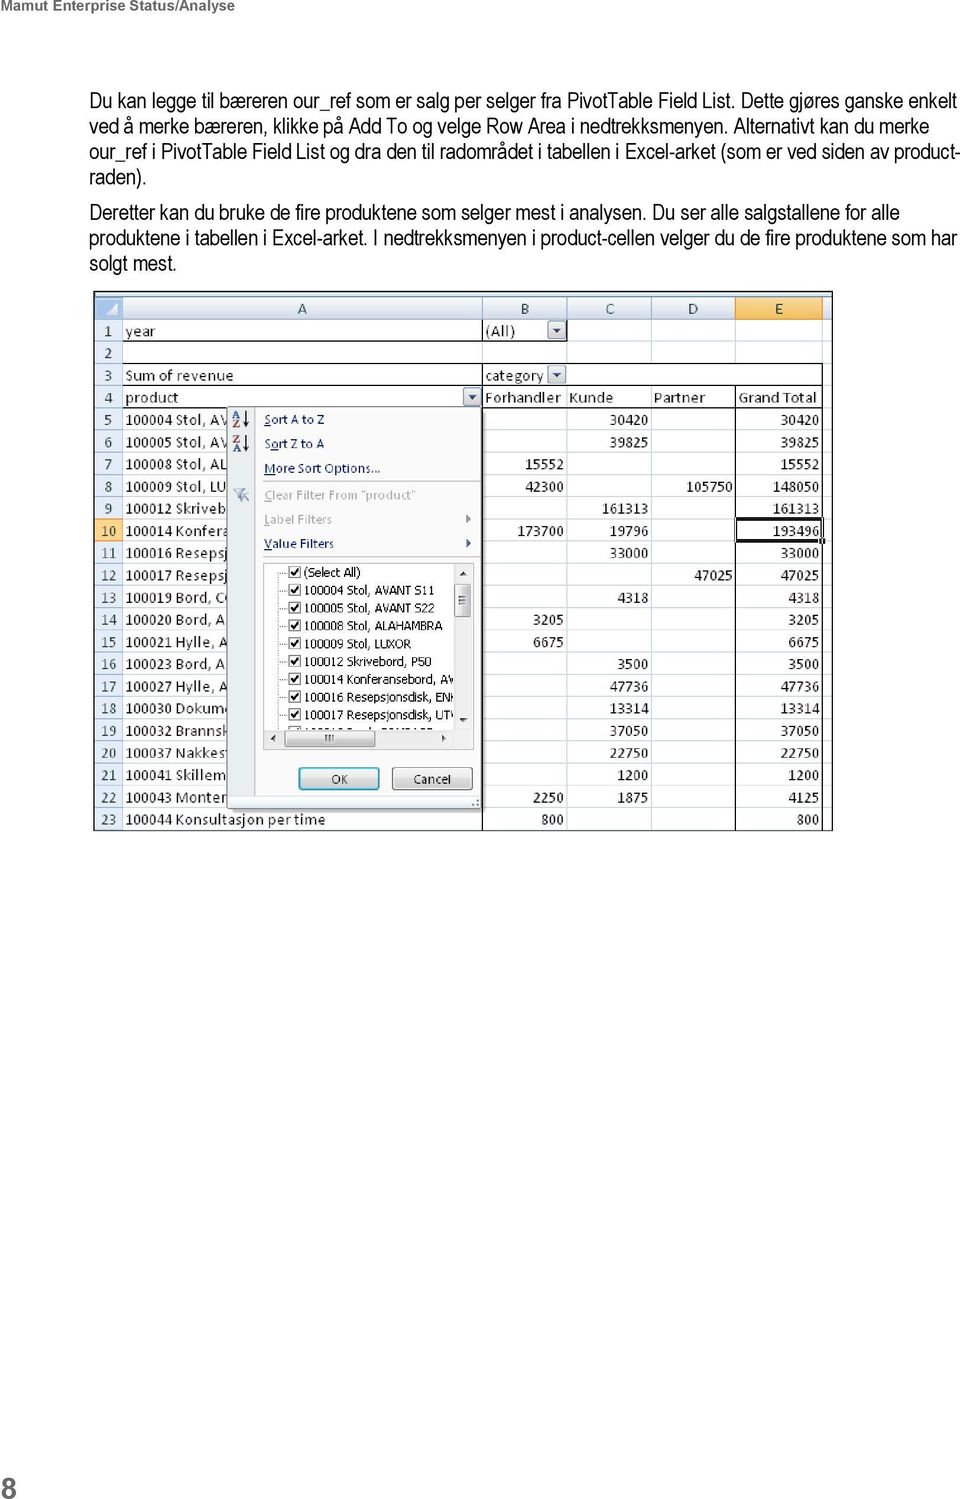 Alternativt kan du merke our_ref i PivotTable Field List og dra den til radområdet i tabellen i Excel-arket (som er ved siden av productraden).